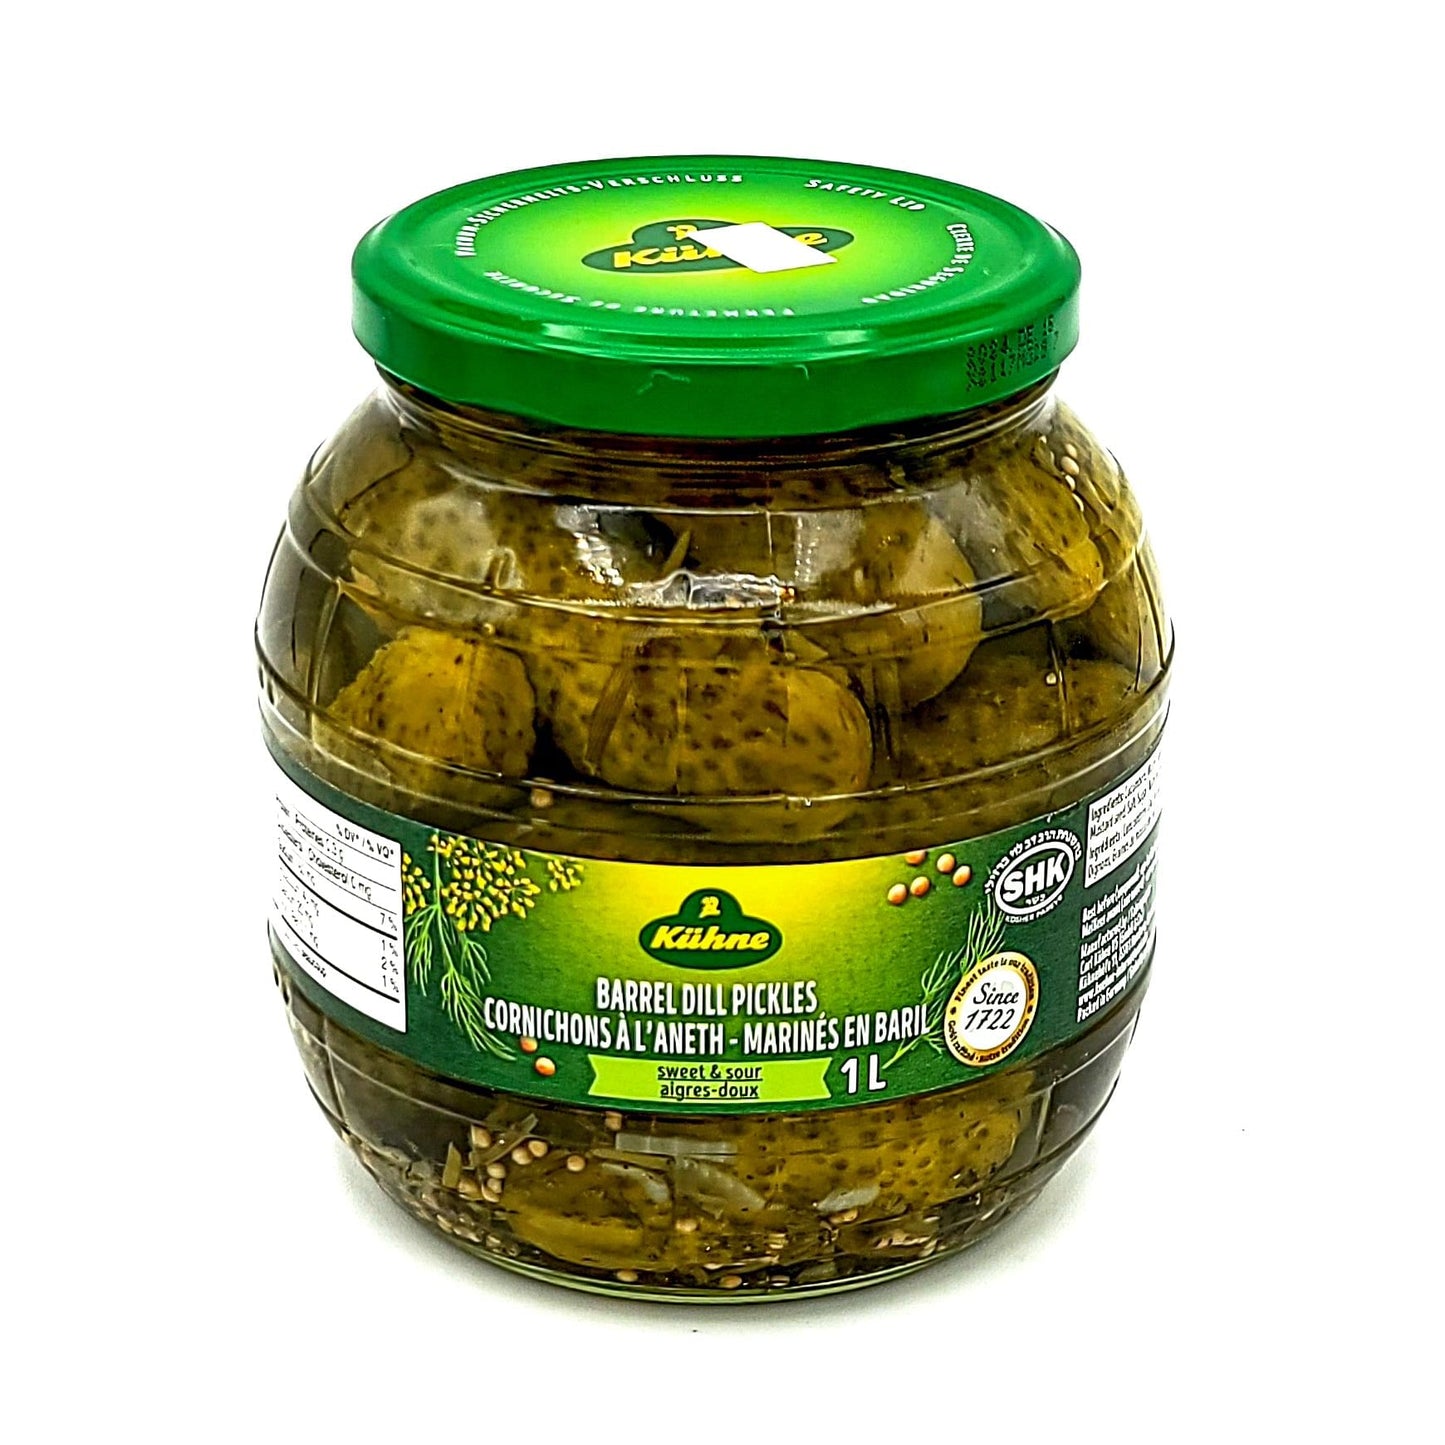 Kühne - Barrel Dill Pickles - 500mL - Valbella Gourmet Foods